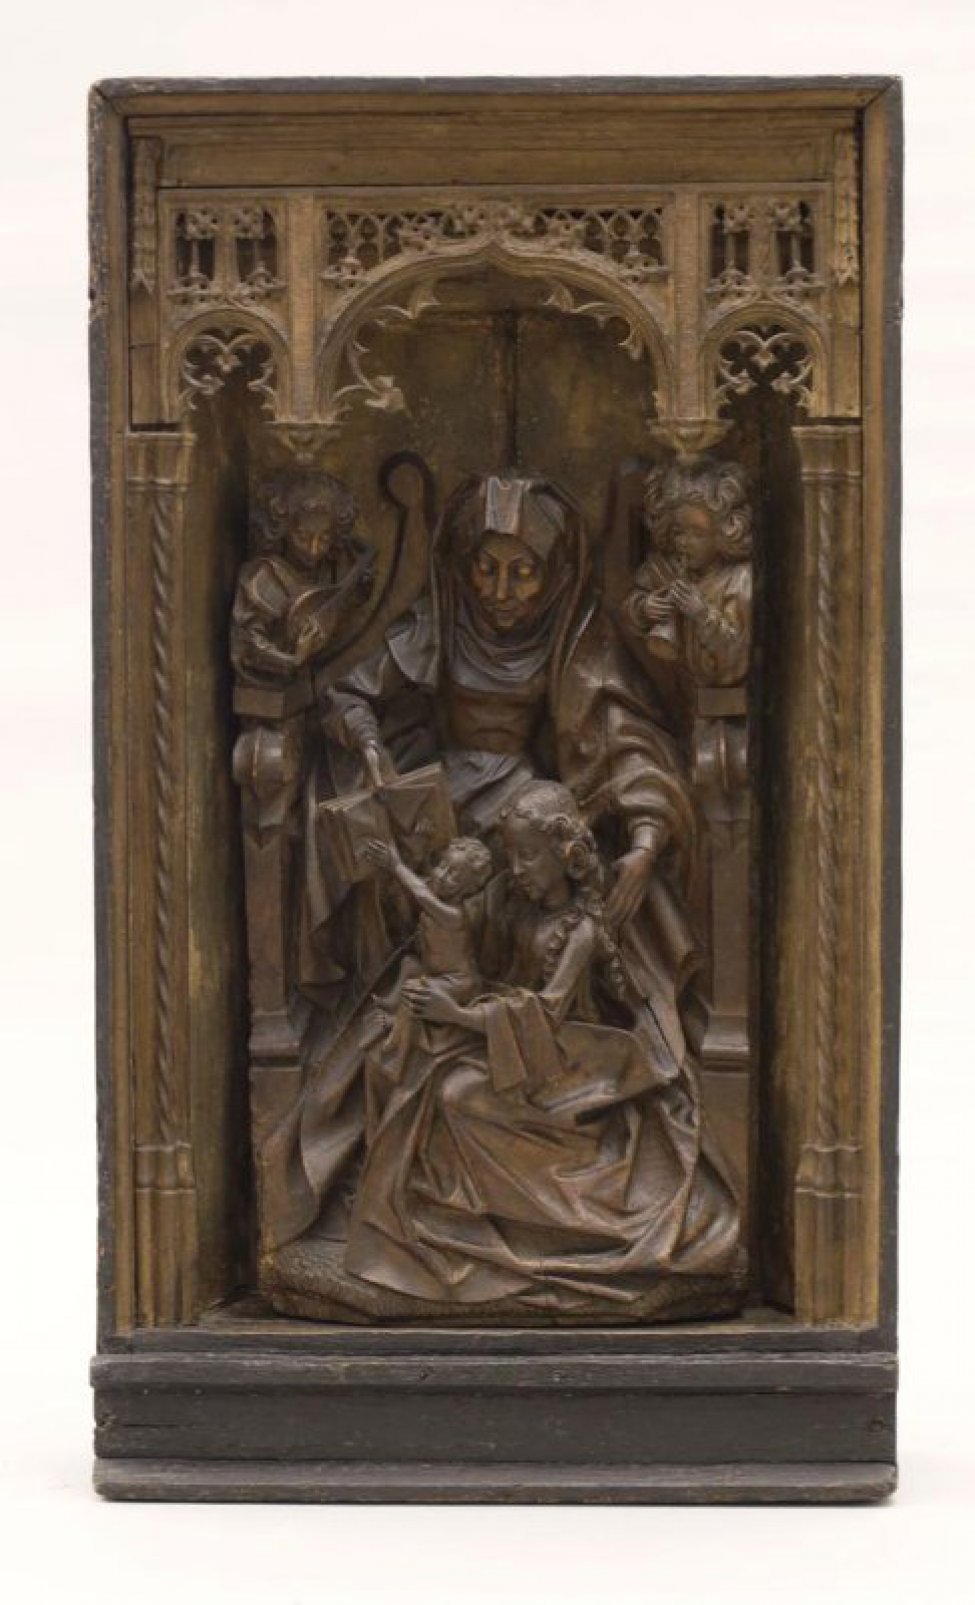 Изображена женщина, сидит на троне в длинной одежде и повязке на голове. В ногах у Св. Анны сидит женщина с младенцем на коленях, который тянется к раскрытой книге, протянутой Анной. За троном с обеих сторон фигуры ангелов.